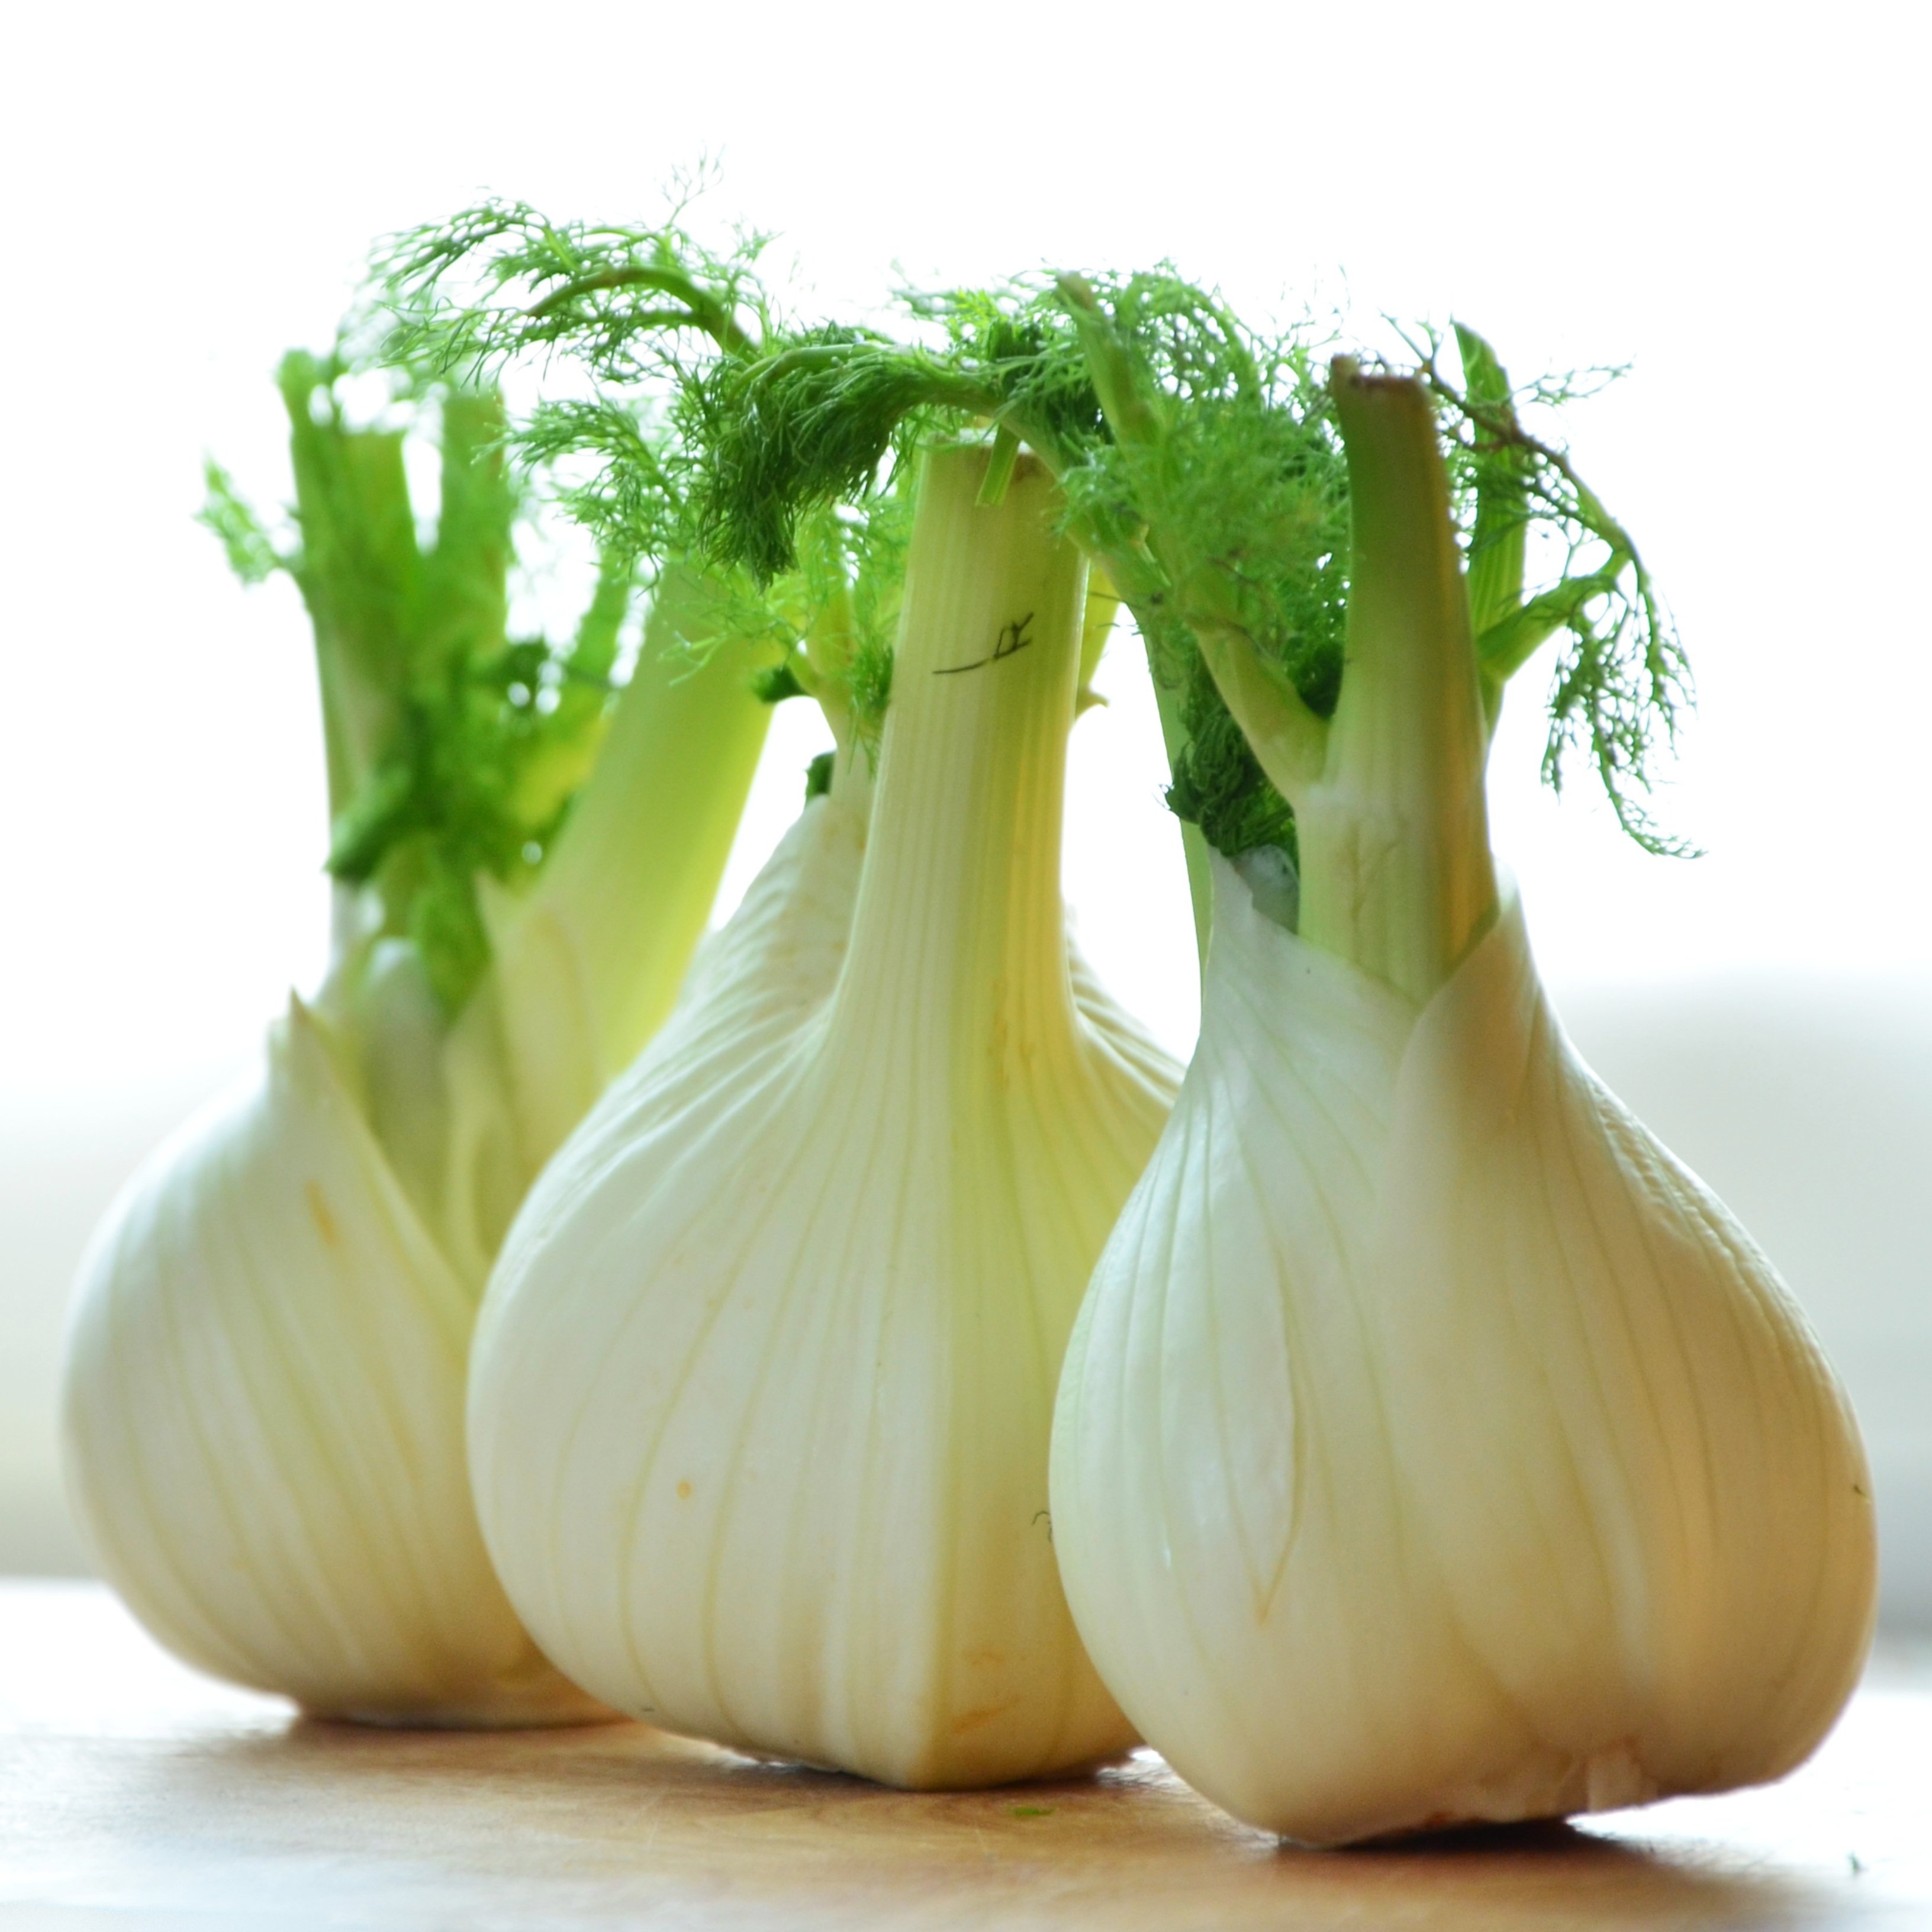 El hinojo, una verdura poco utilizada pero con muchos beneficios para la salud